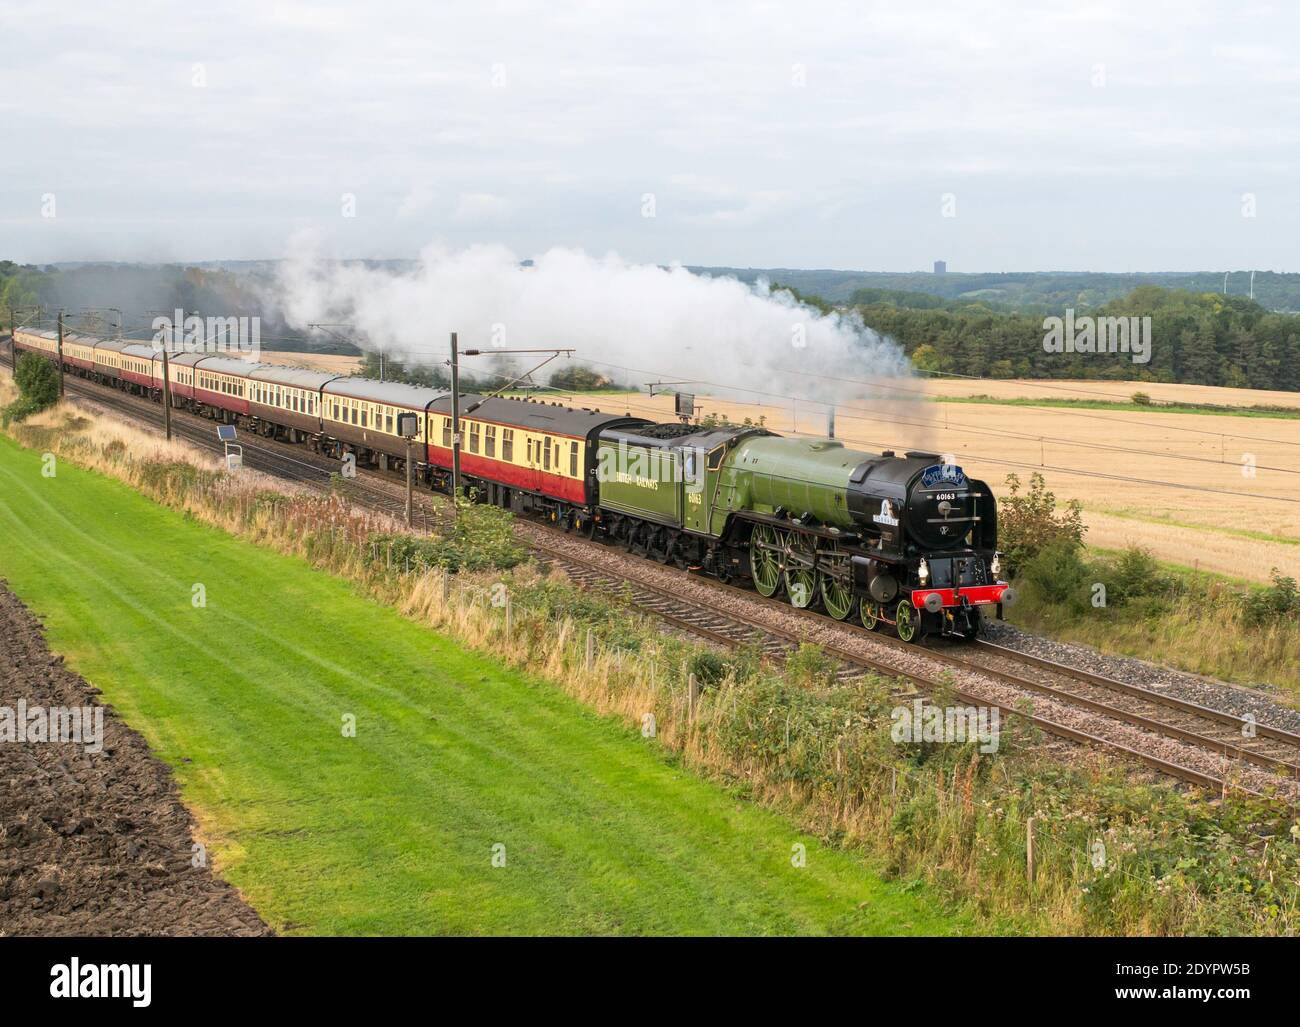 2008 locomotive à vapeur construite 60163 Tornado passant par Plawsworth sur la ligne principale de la côte est en 2015, Co. Durham, Angleterre, Royaume-Uni Banque D'Images